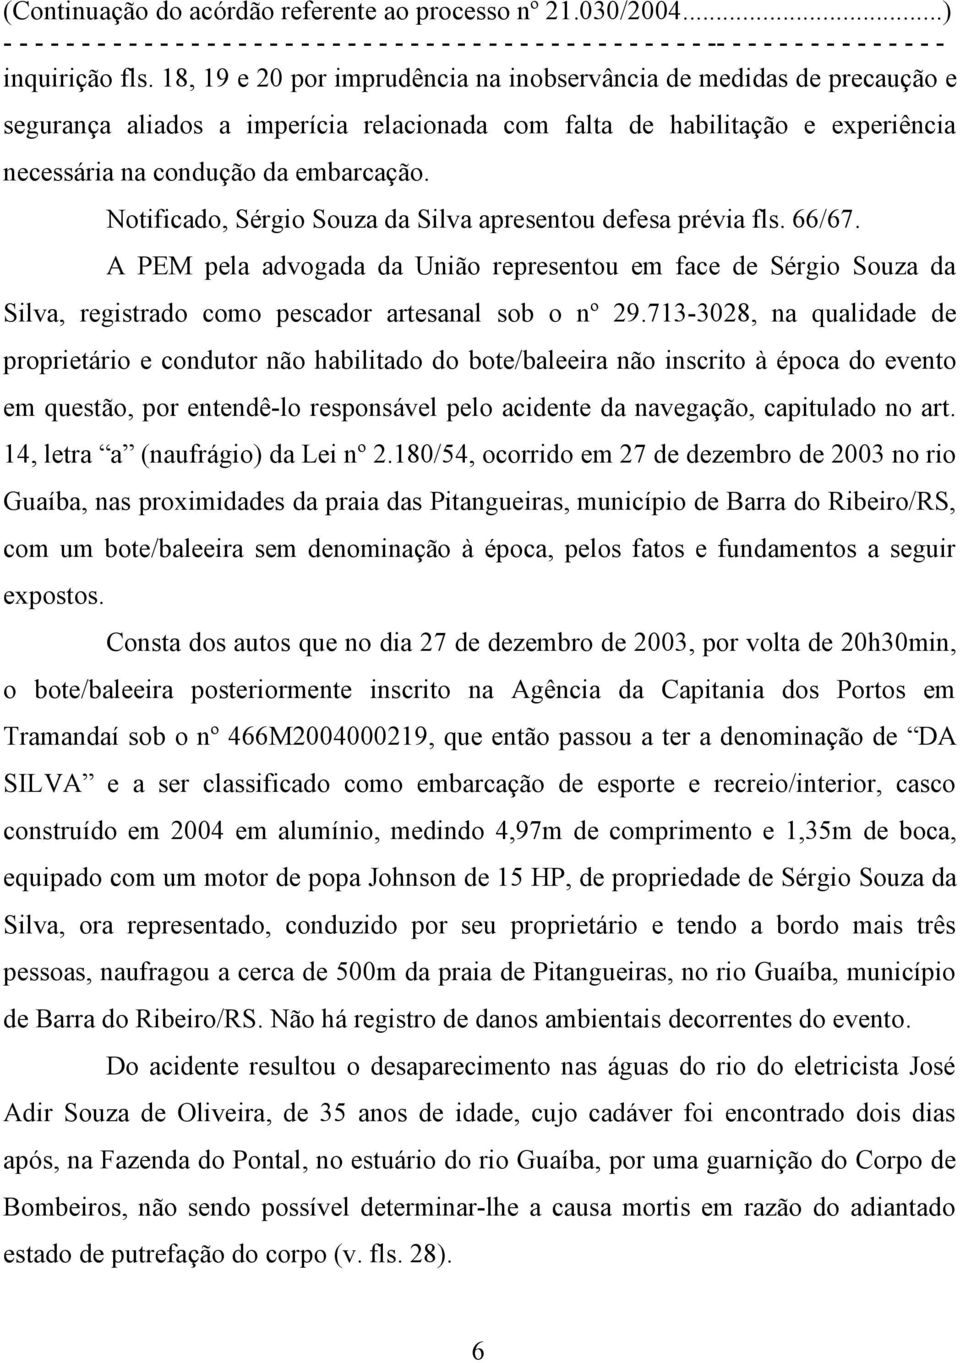 Notificado, Sérgio Souza da Silva apresentou defesa prévia fls. 66/67. A PEM pela advogada da União representou em face de Sérgio Souza da Silva, registrado como pescador artesanal sob o nº 29.